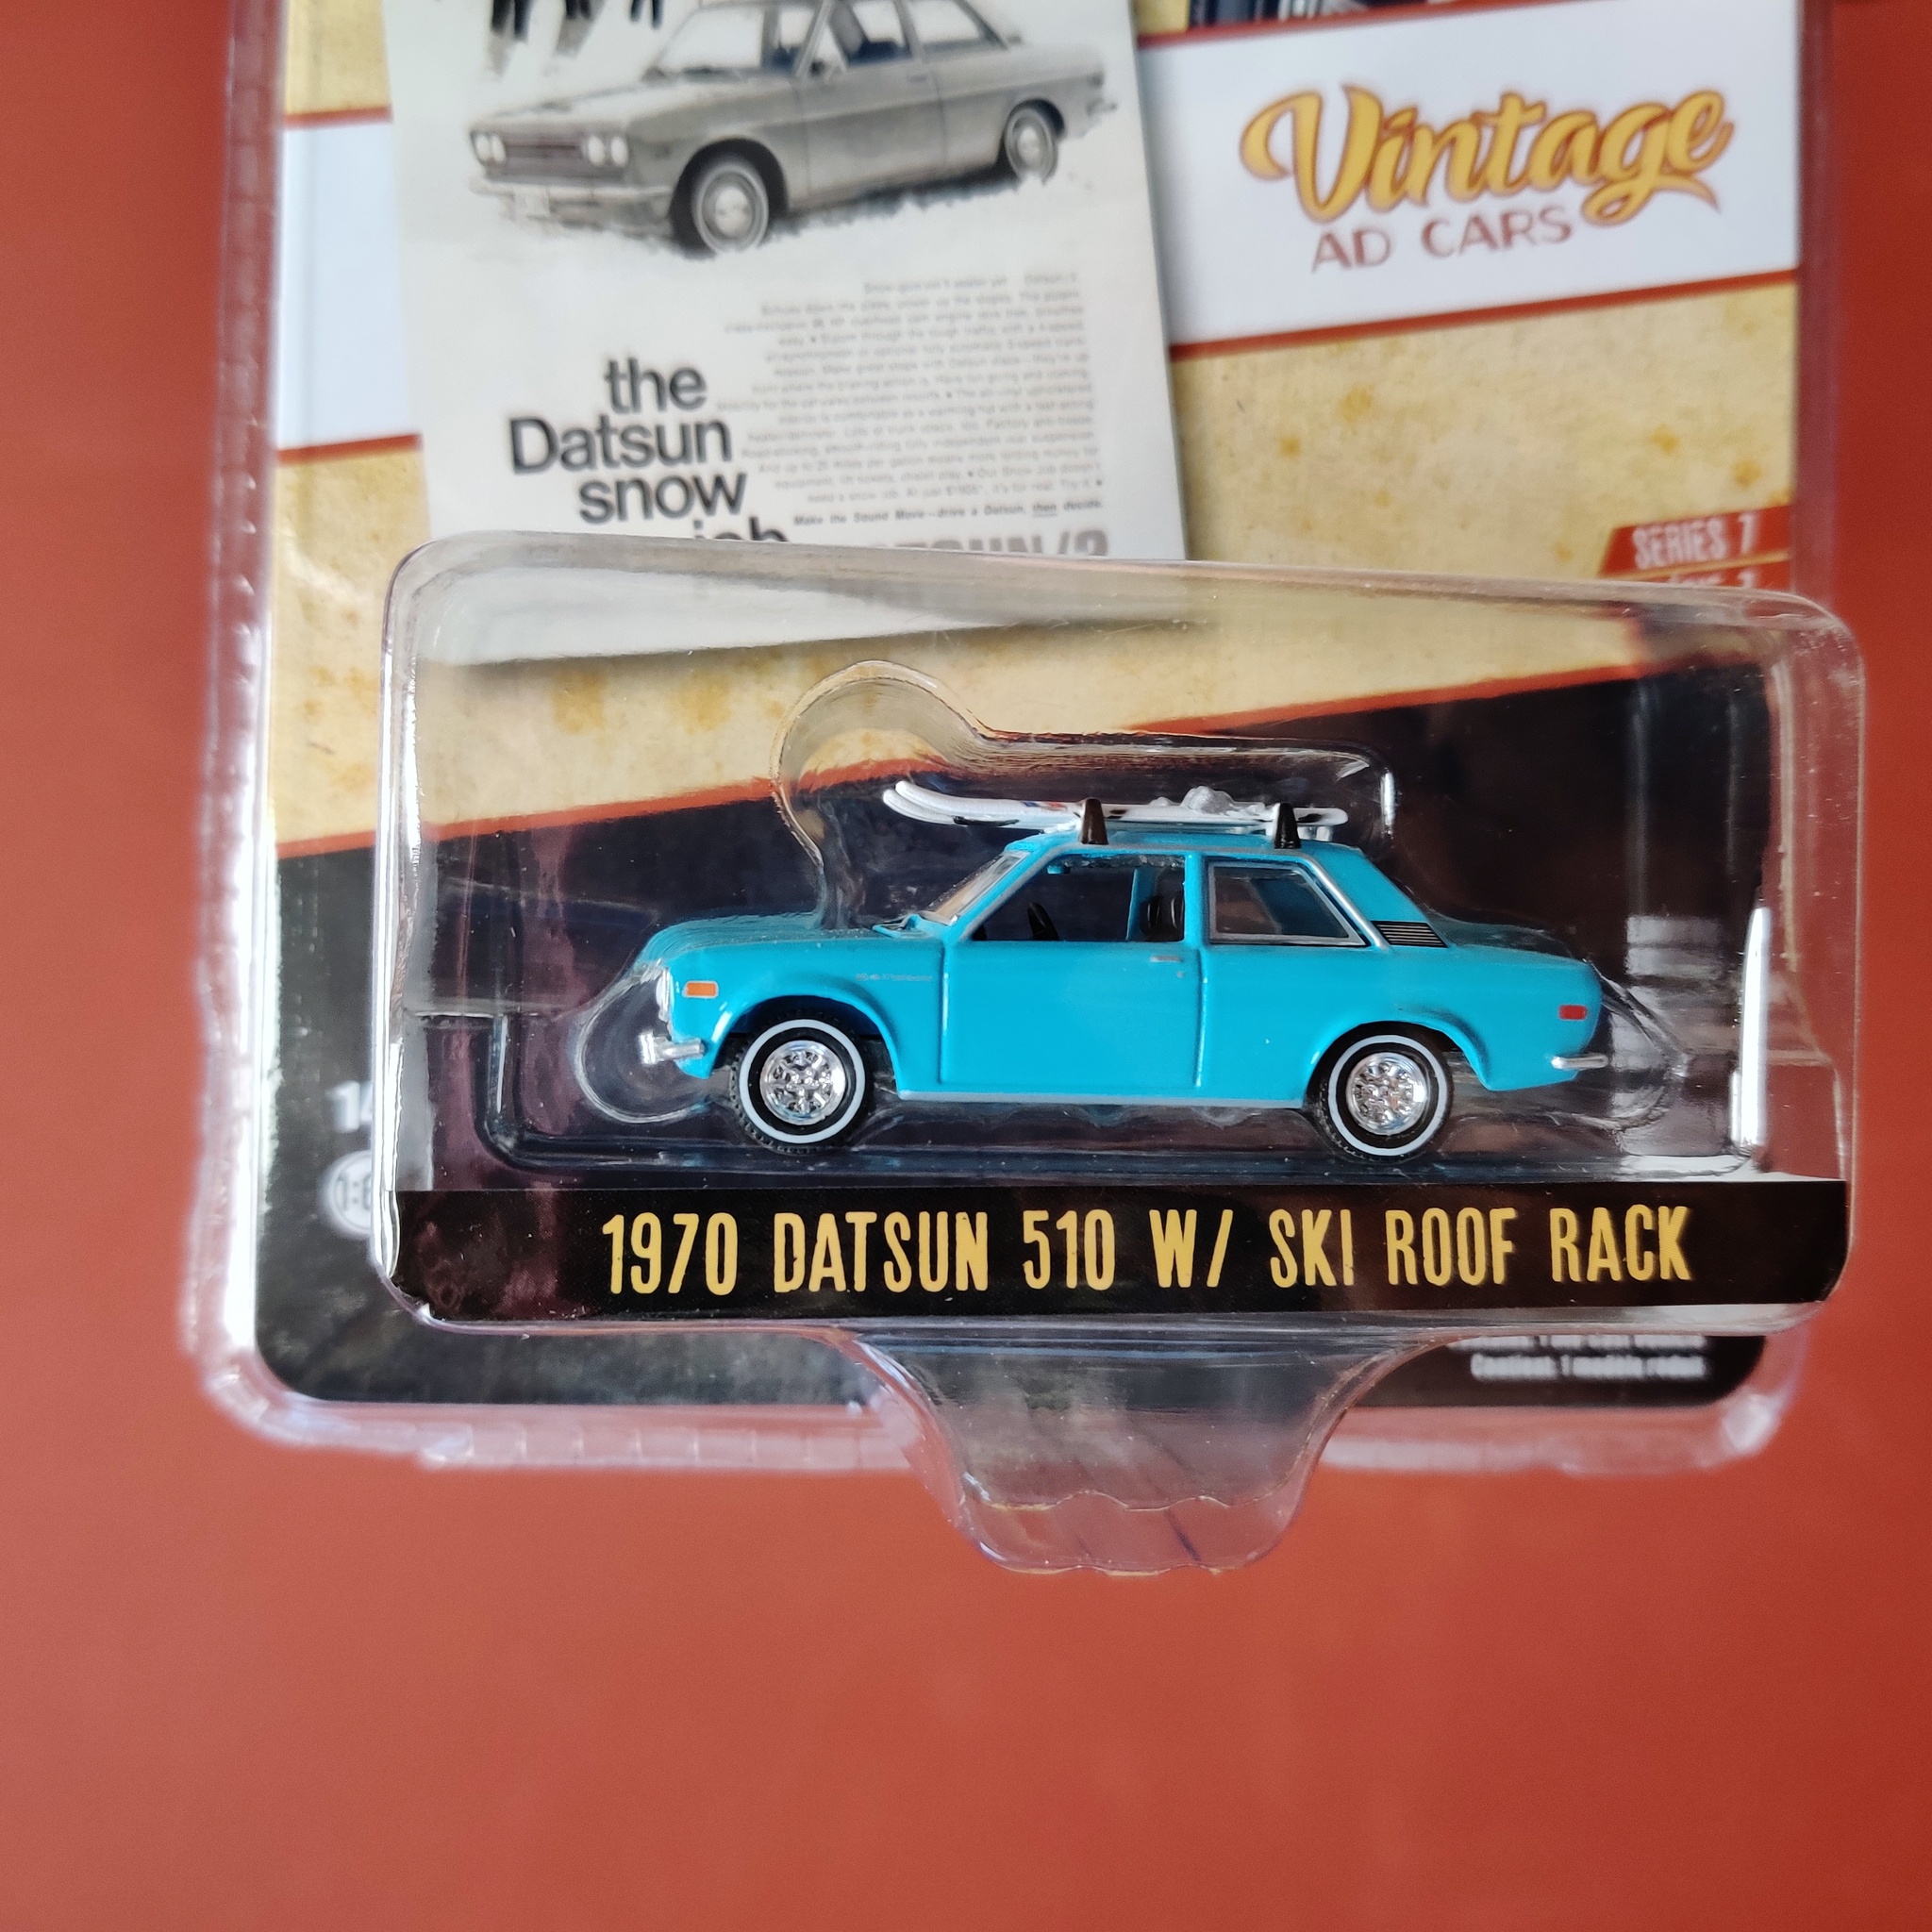 Skala 1/64 Datsun 510 W/ m skidor på taket 70' "Vintage AD Cars" Ser.7 från Greenlight